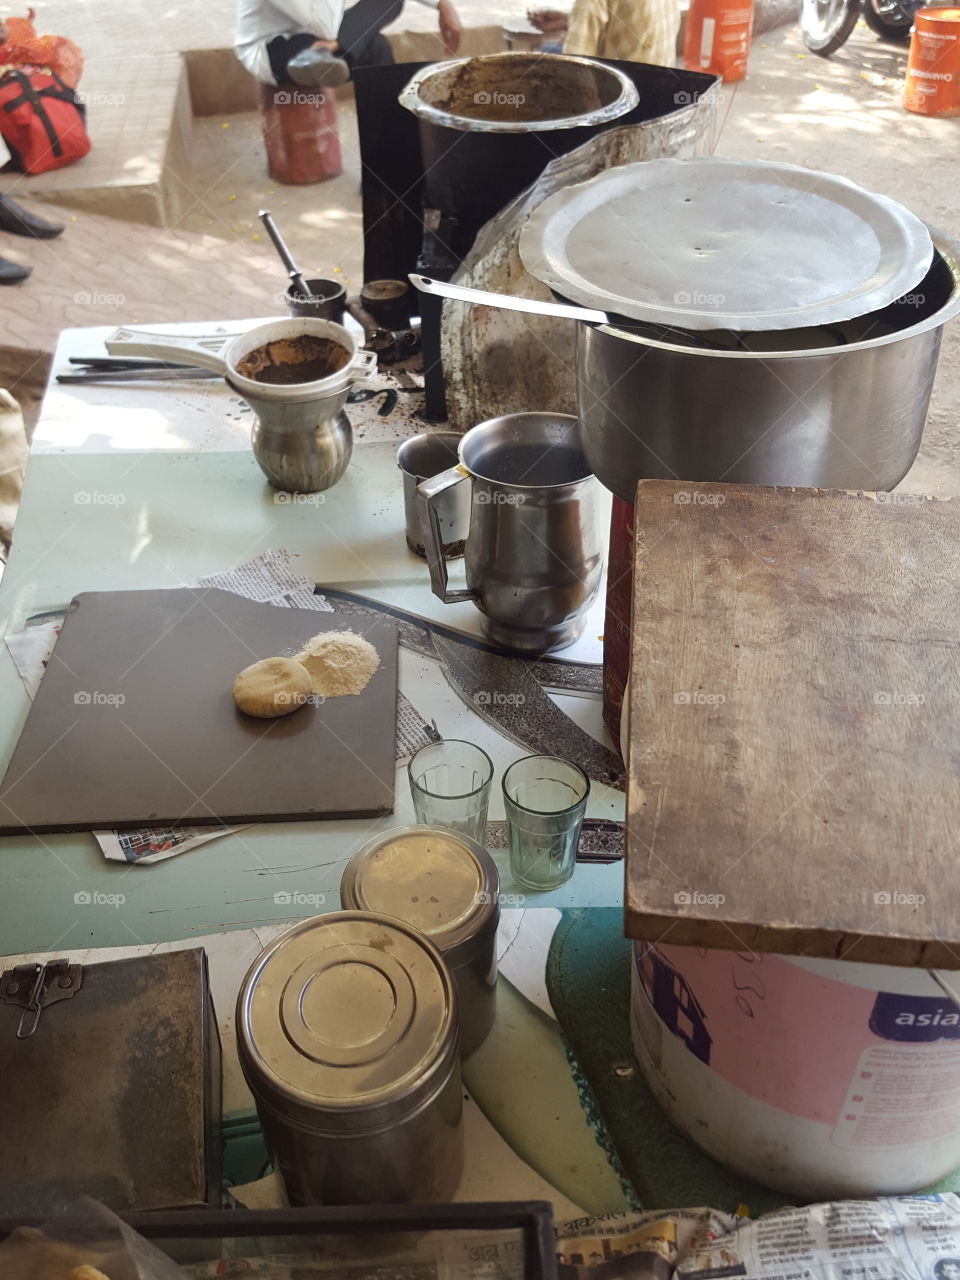 India Tea Kiosk Objects on the table